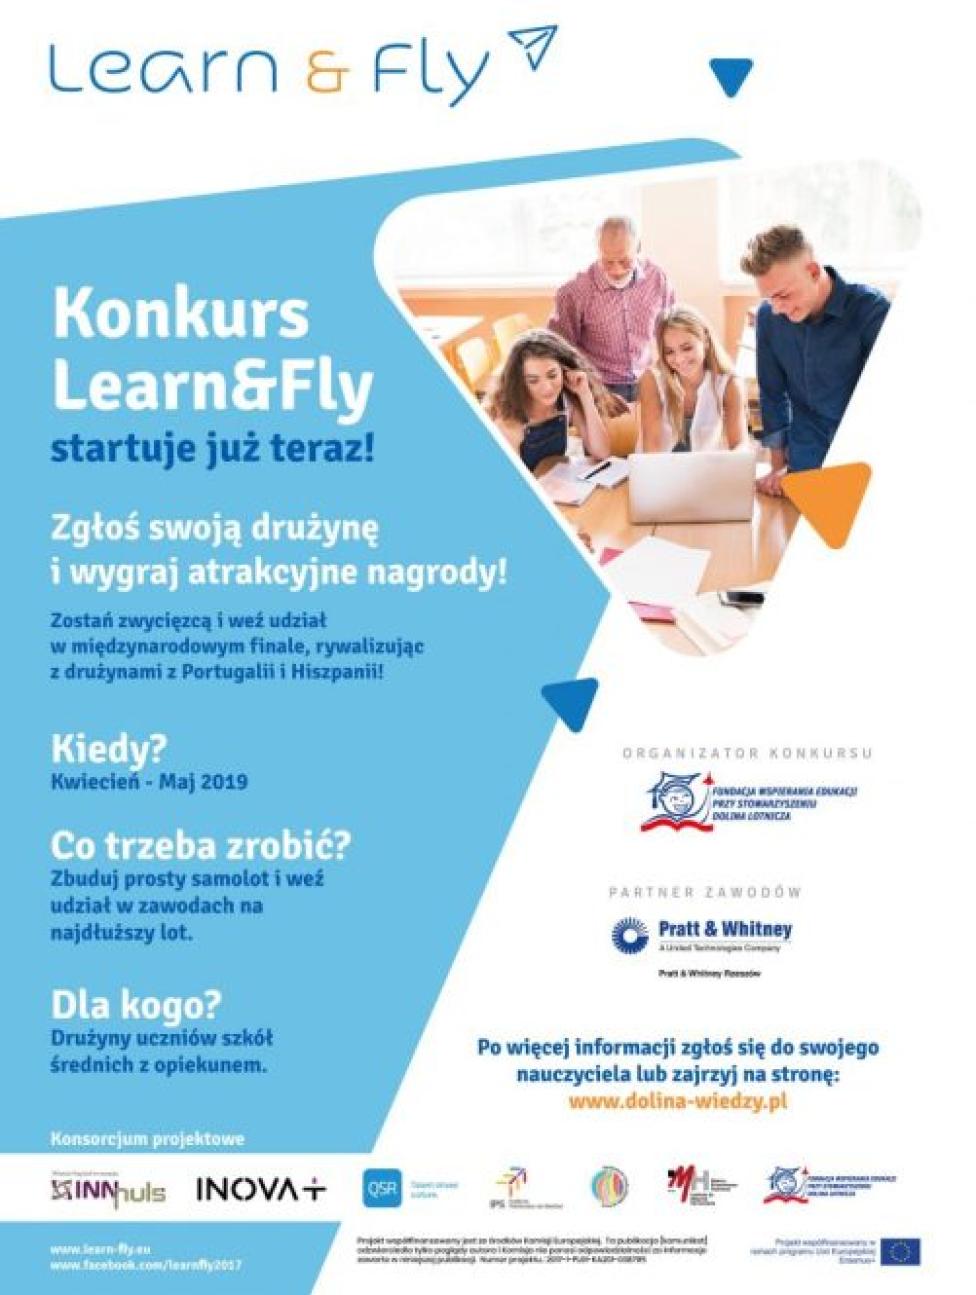 Learn&Fly – zawody dla szkół średnich w budowaniu modelu samolotu (fot. dolina-wiedzy.pl)